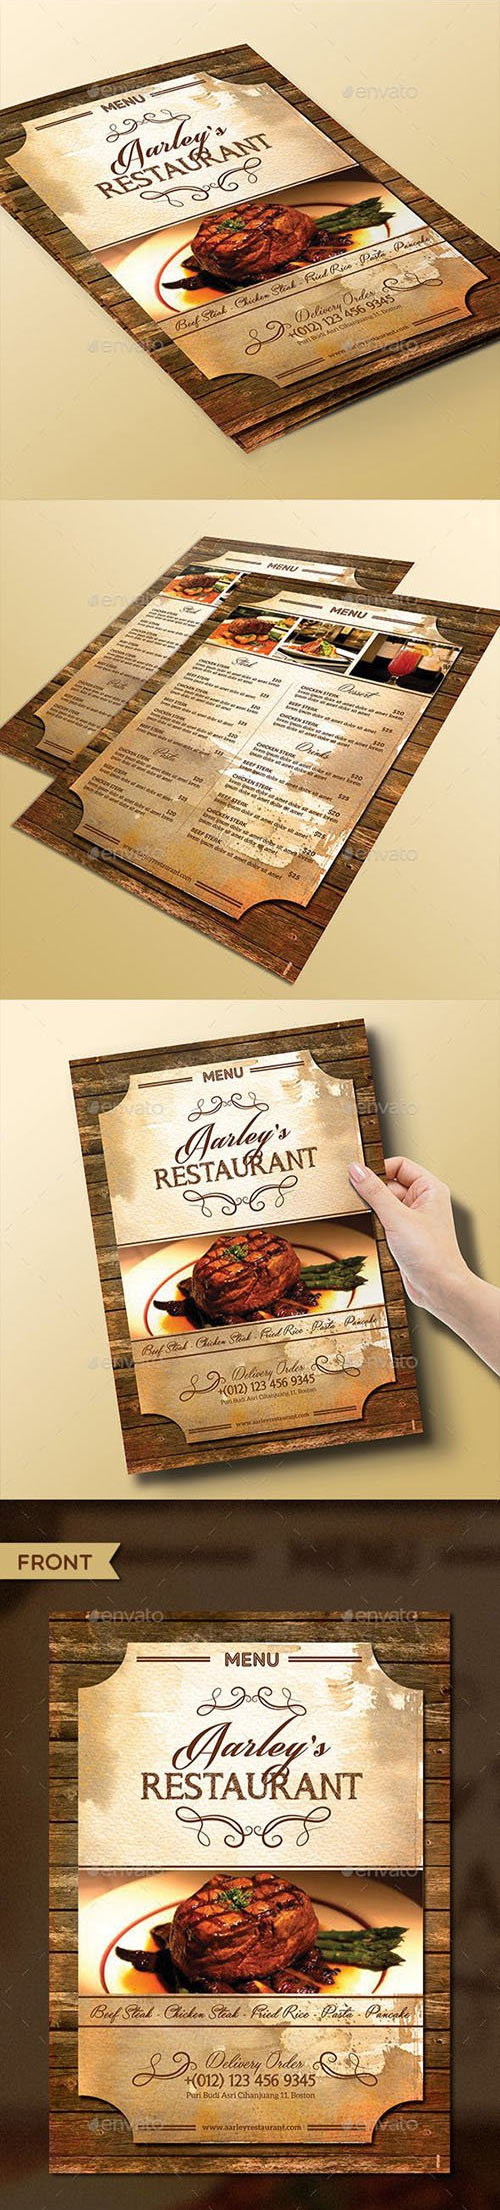 Vintage Restaurant Menu Flyer